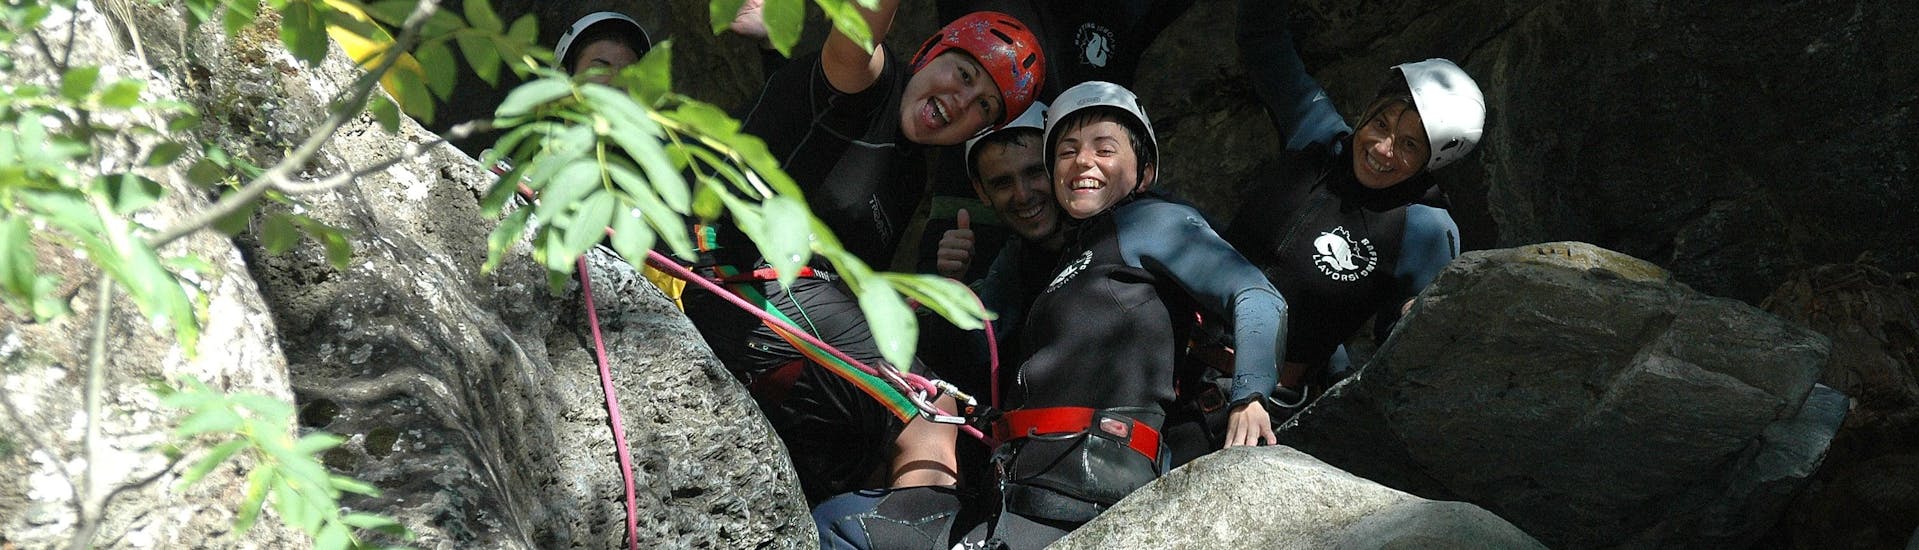 Een groep vrienden gaat canyoning in Barranco de Berrós met Rafting Llavorsí.